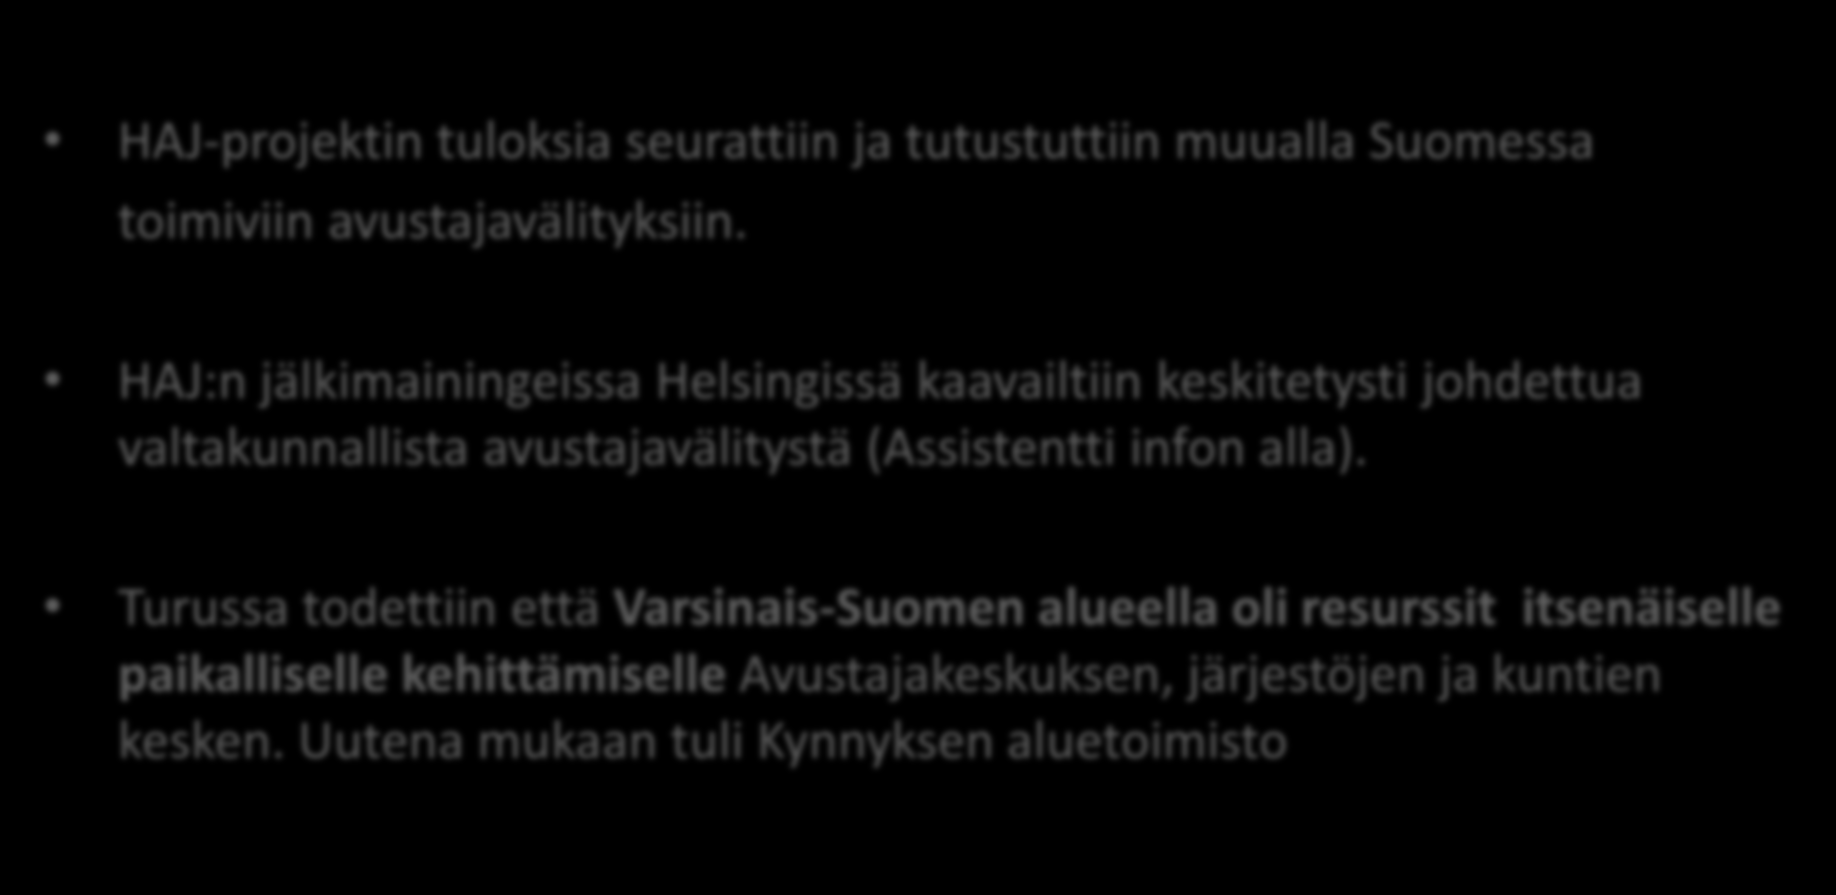 TURUSSA SEURATTIIN HAJ-projektin tuloksia seurattiin ja tutustuttiin muualla Suomessa toimiviin avustajavälityksiin.